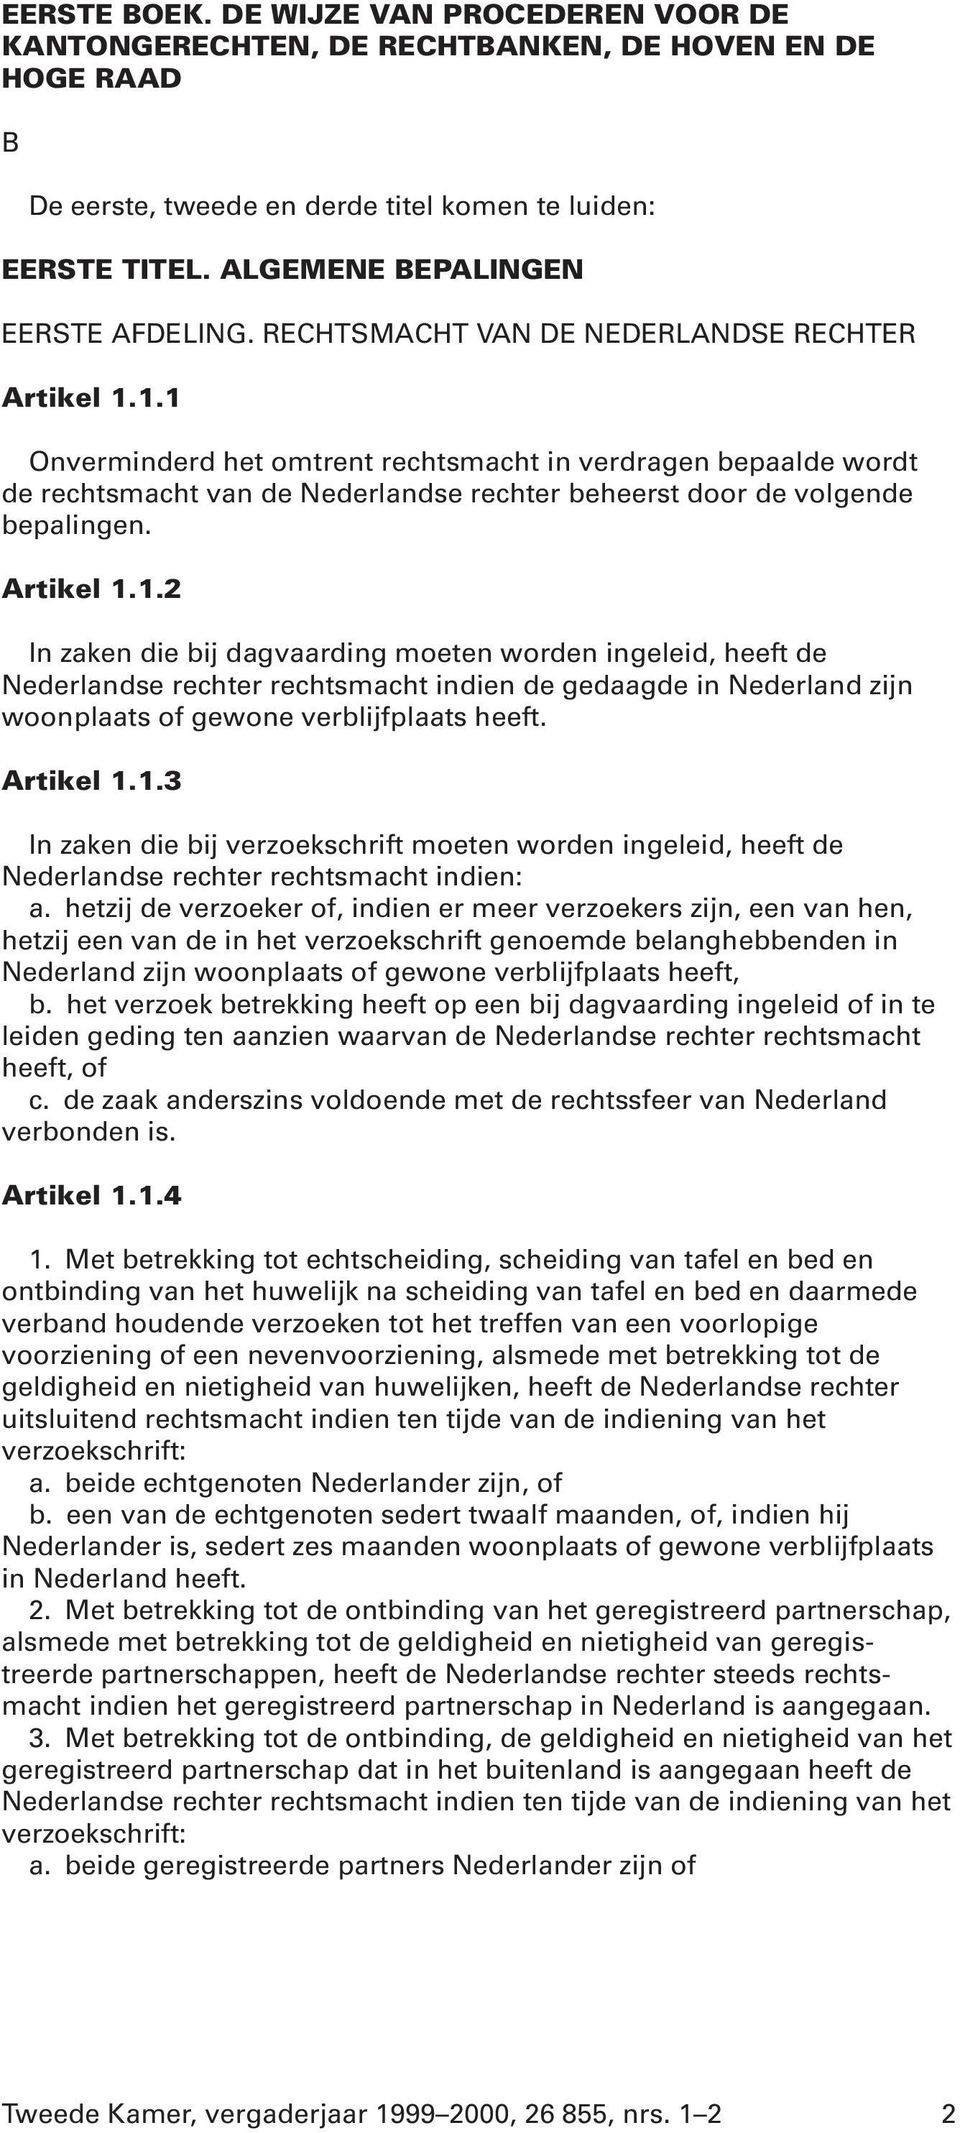 1.1 Onverminderd het omtrent rechtsmacht in verdragen bepaalde wordt de rechtsmacht van de Nederlandse rechter beheerst door de volgende bepalingen. Artikel 1.1.2 In zaken die bij dagvaarding moeten worden ingeleid, heeft de Nederlandse rechter rechtsmacht indien de gedaagde in Nederland zijn woonplaats of gewone verblijfplaats heeft.